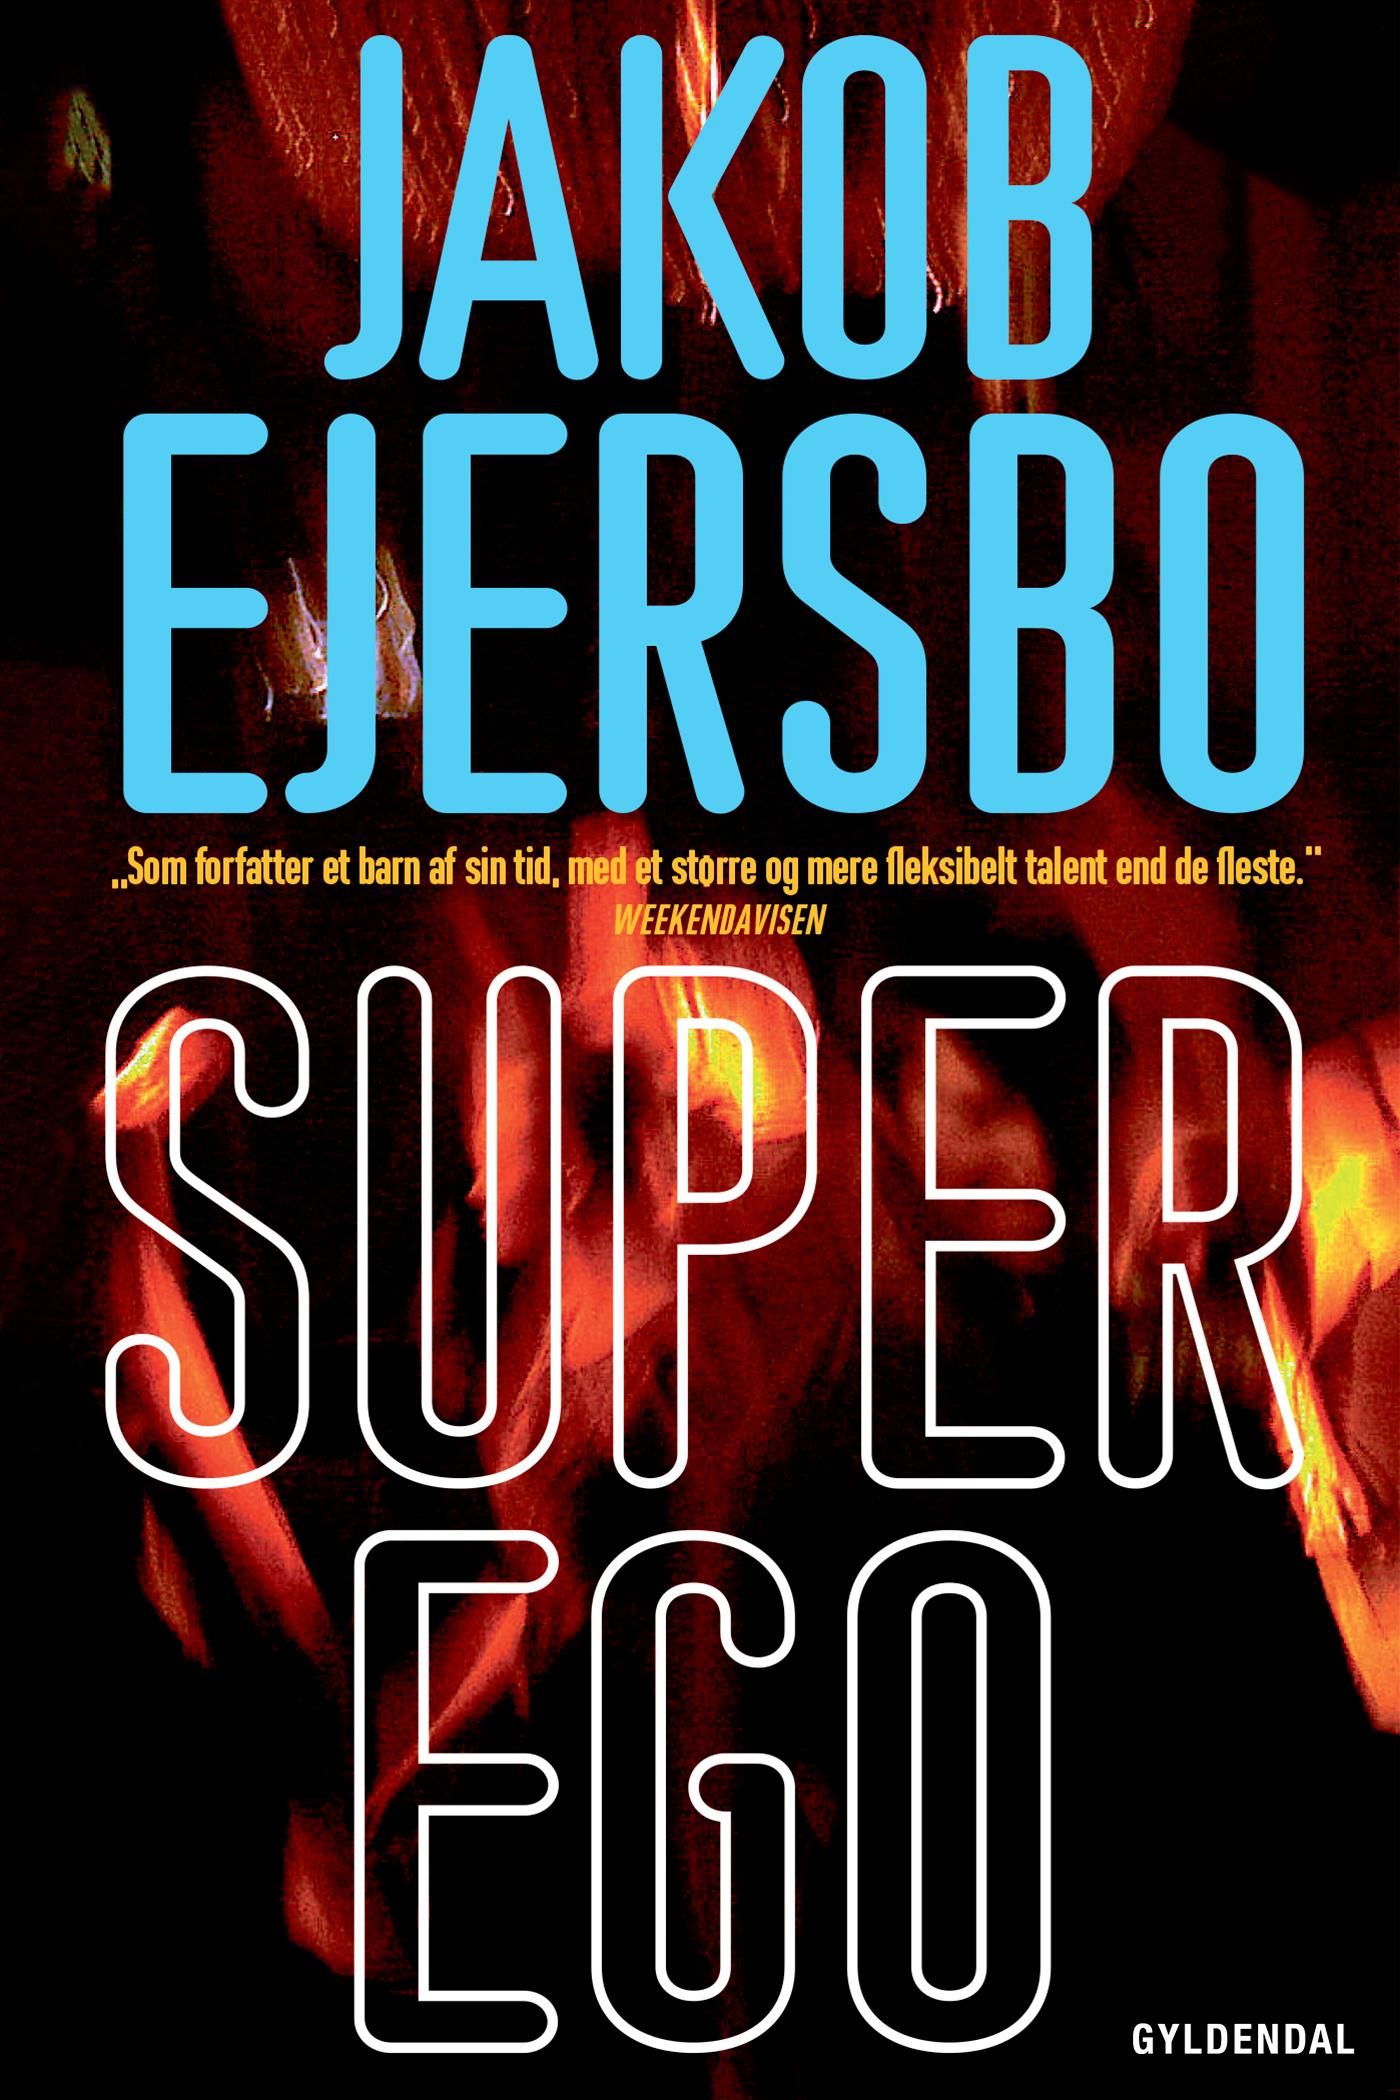 Superego, eBook by Jakob Ejersbo